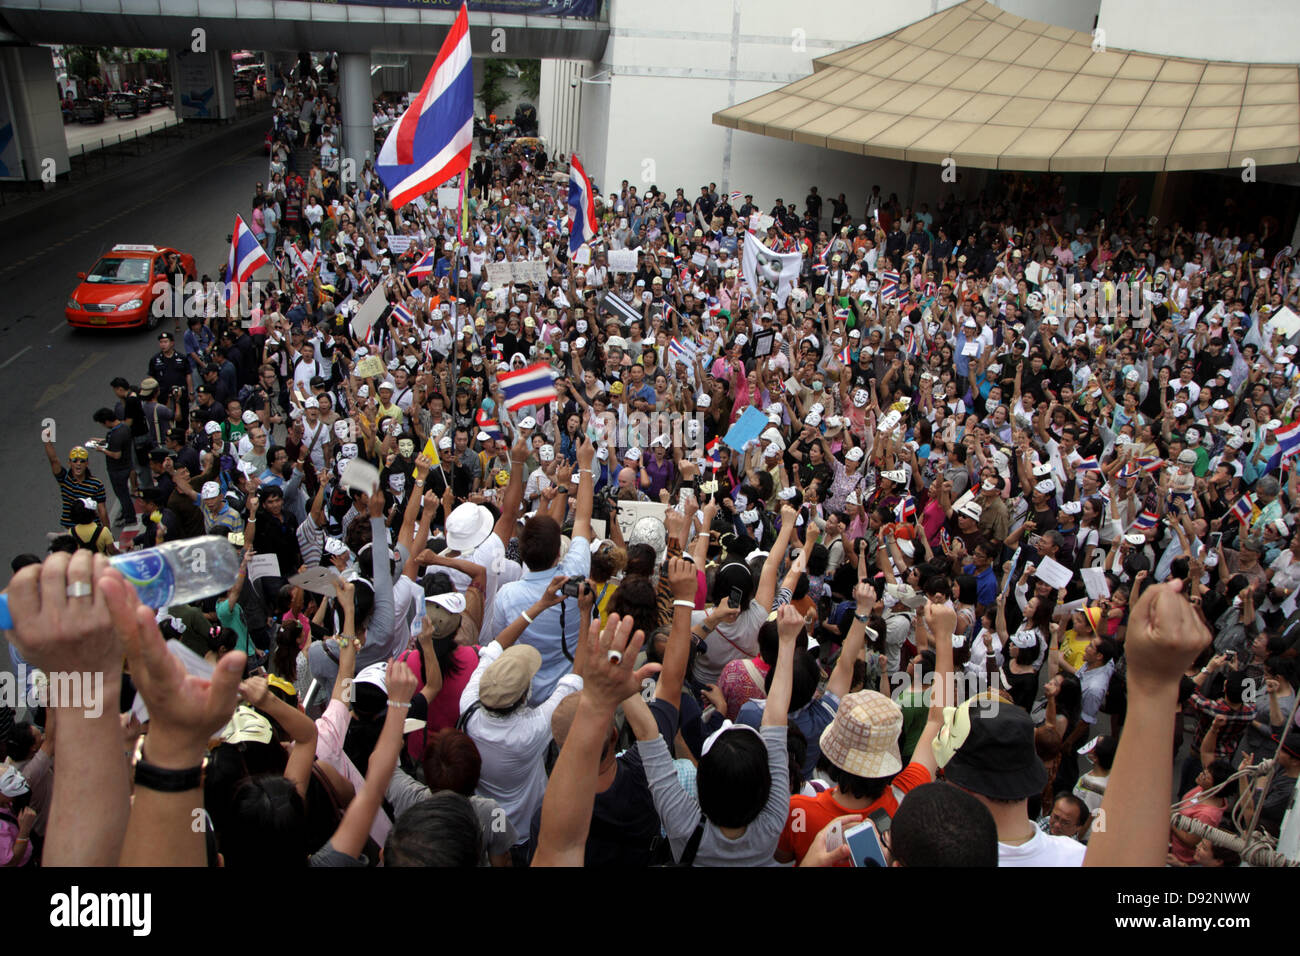 Bangkok, Tailandia. El 9 de junio de 2013. Los manifestantes portando máscaras de Guy Fawkes cheer durante una protesta en el Centro de Arte y Cultura de Bangkok. Alrededor de 400 manifestantes vestidos de "Guy Fawkes" seguir el rallye en Bangkok y otras partes de Tailandia Shinawatra Yingluck contra el gobierno, que los opositores dicen que es una "marioneta" régimen controlado por el prófugo ex primer ministro Thaksin Shinawatra. Crédito: Juan Vicente/Alamy Live News Foto de stock